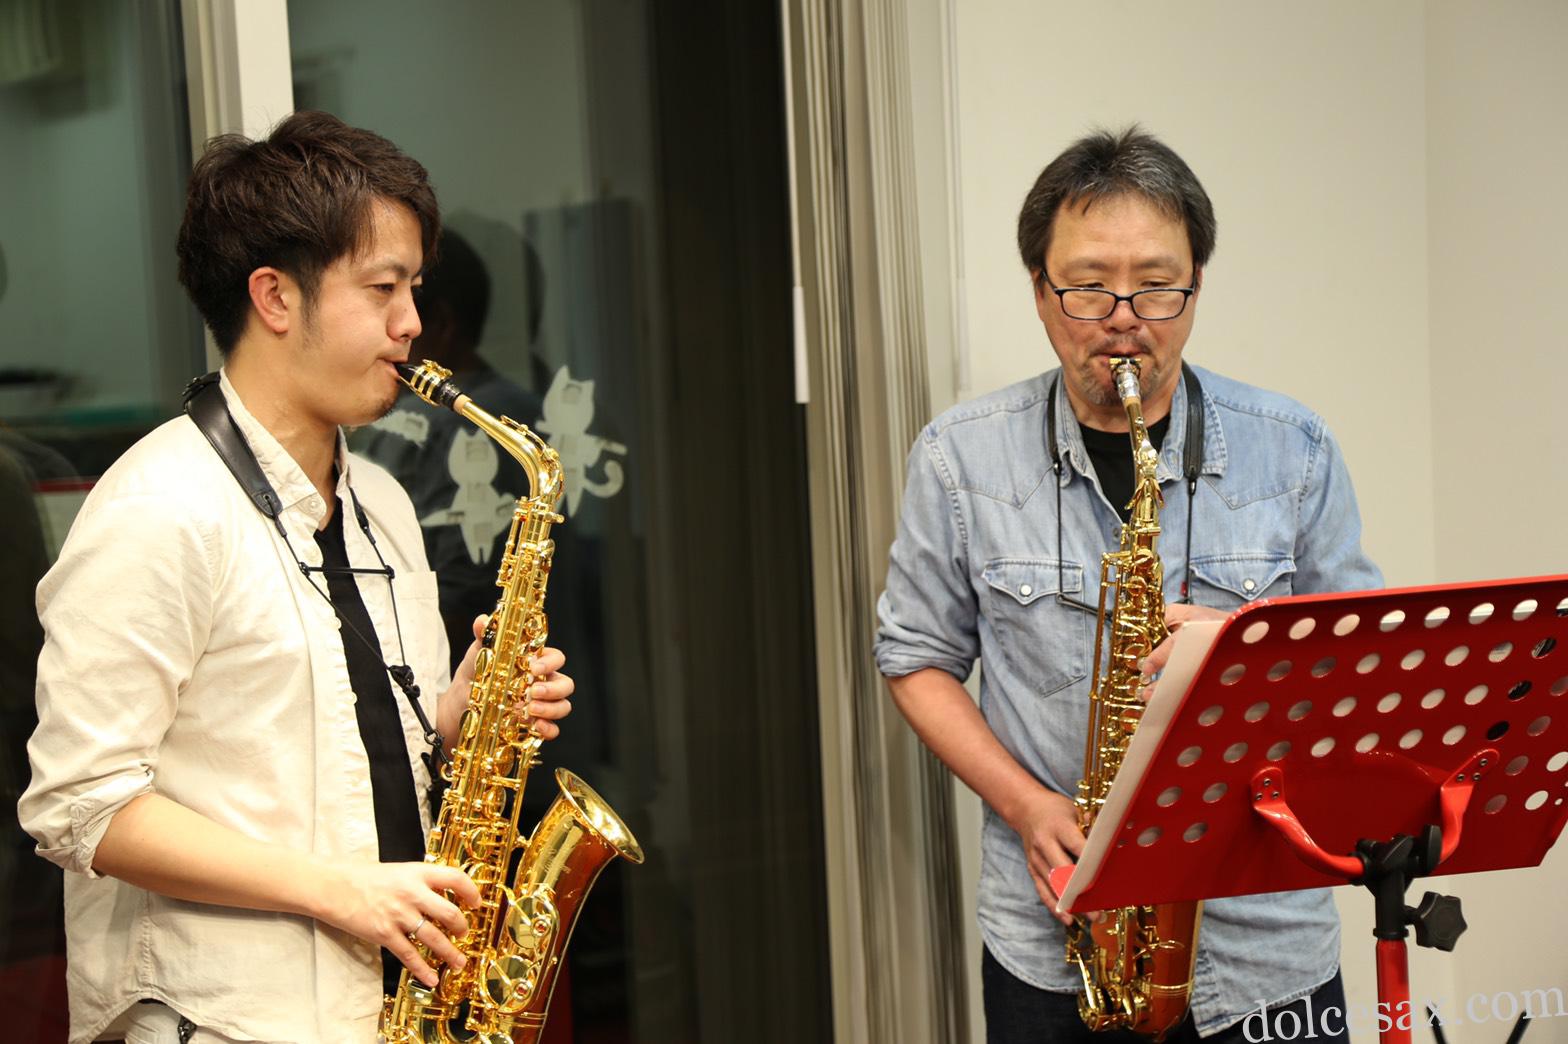 ドルチェ音楽教室について ドルチェ音楽教室 ドルチェ音楽教室は藤沢本町 新川崎 戸塚のサックス ピアノ フルートの音楽教室です